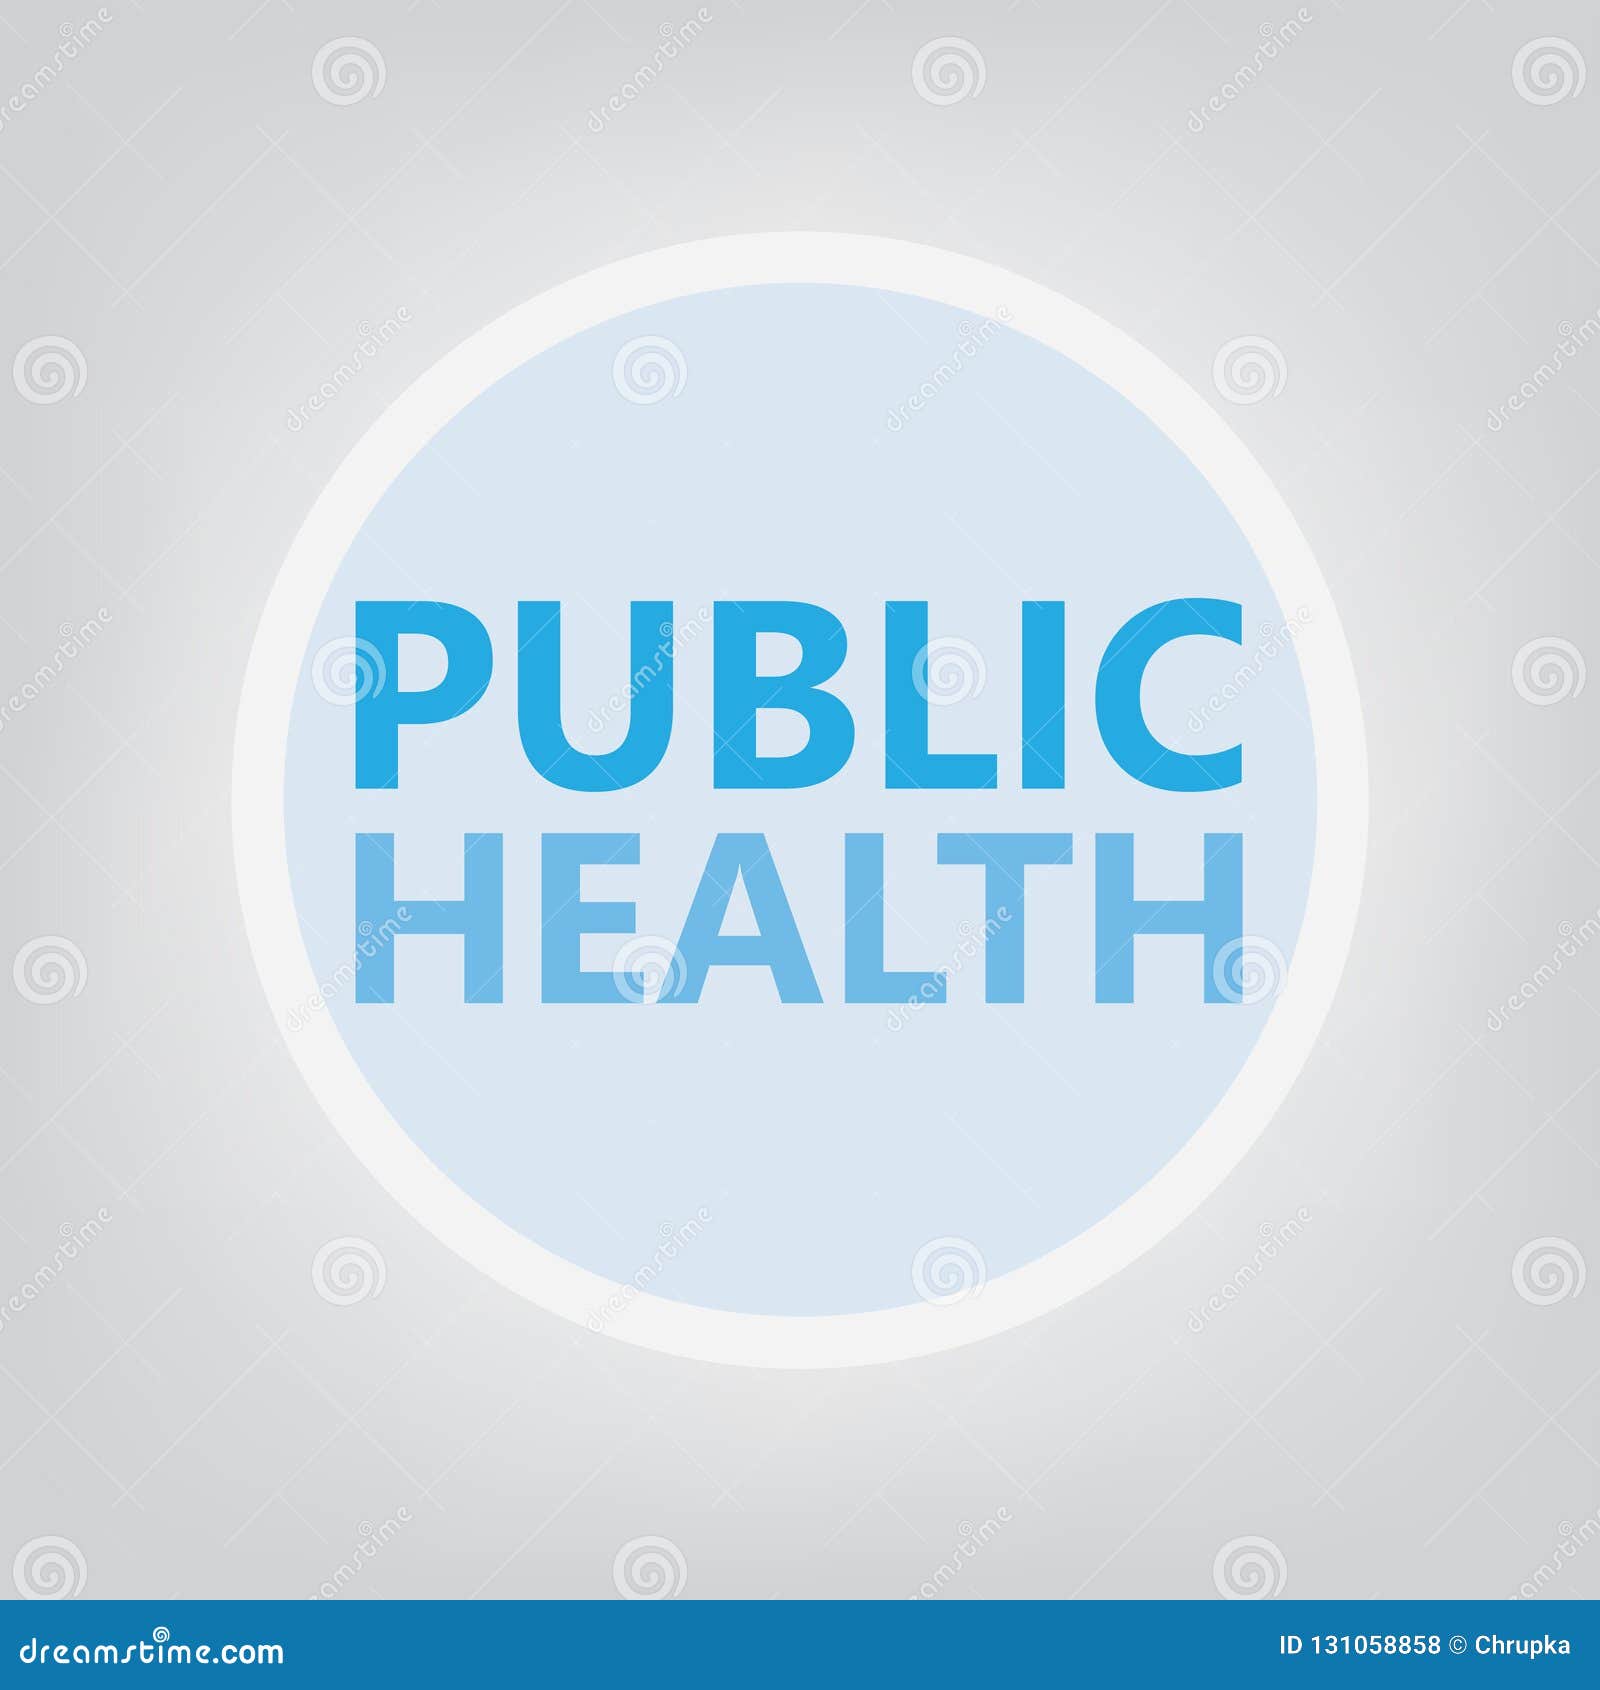 公共卫生概念向量例证 插画包括有云彩 保险 治疗 医生 医疗 医院 背包 报价 图象